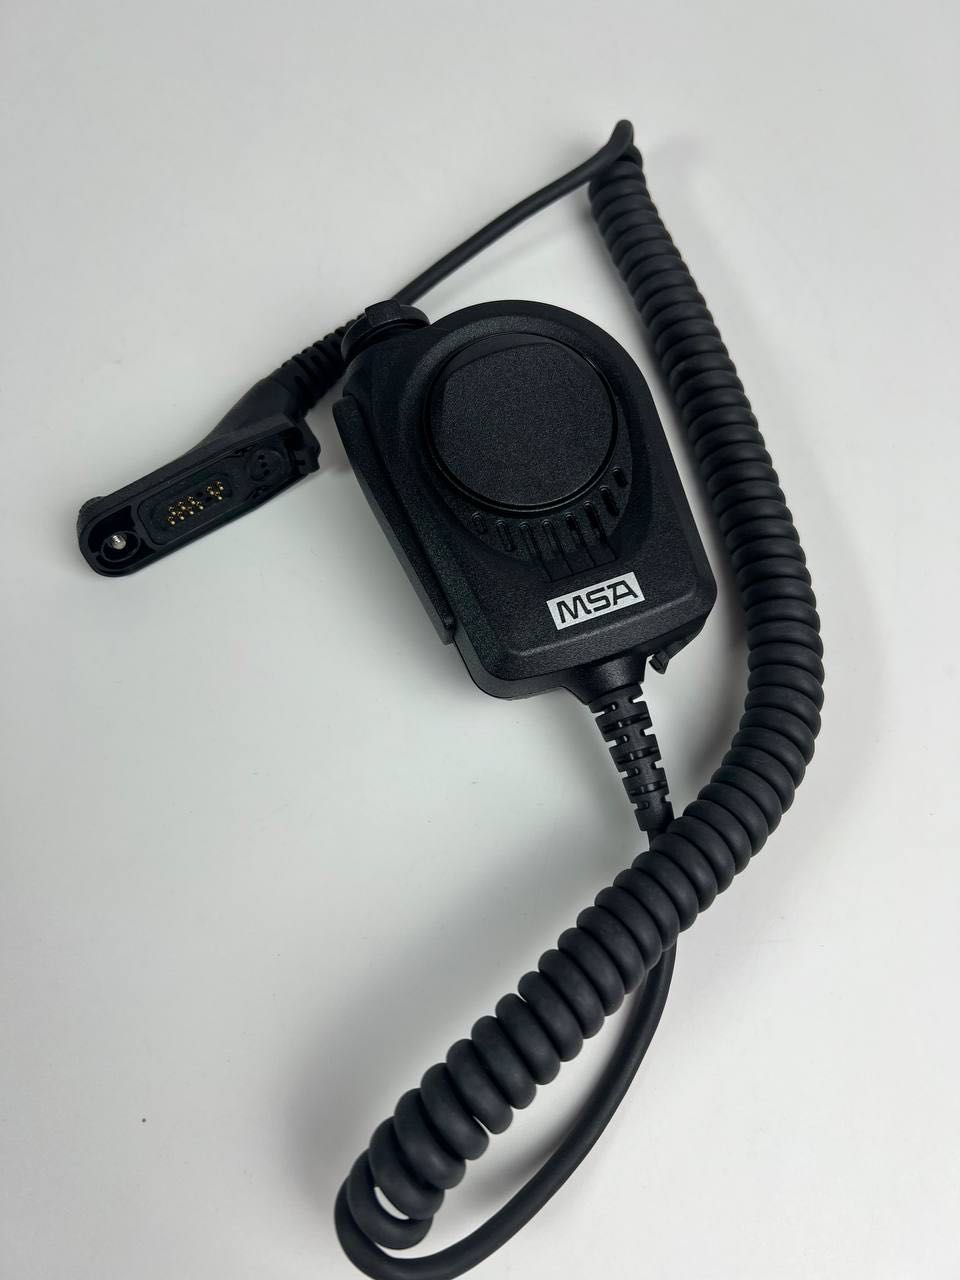 Кнопка Push to talk от MSA для радиостанций Motorola серии DP